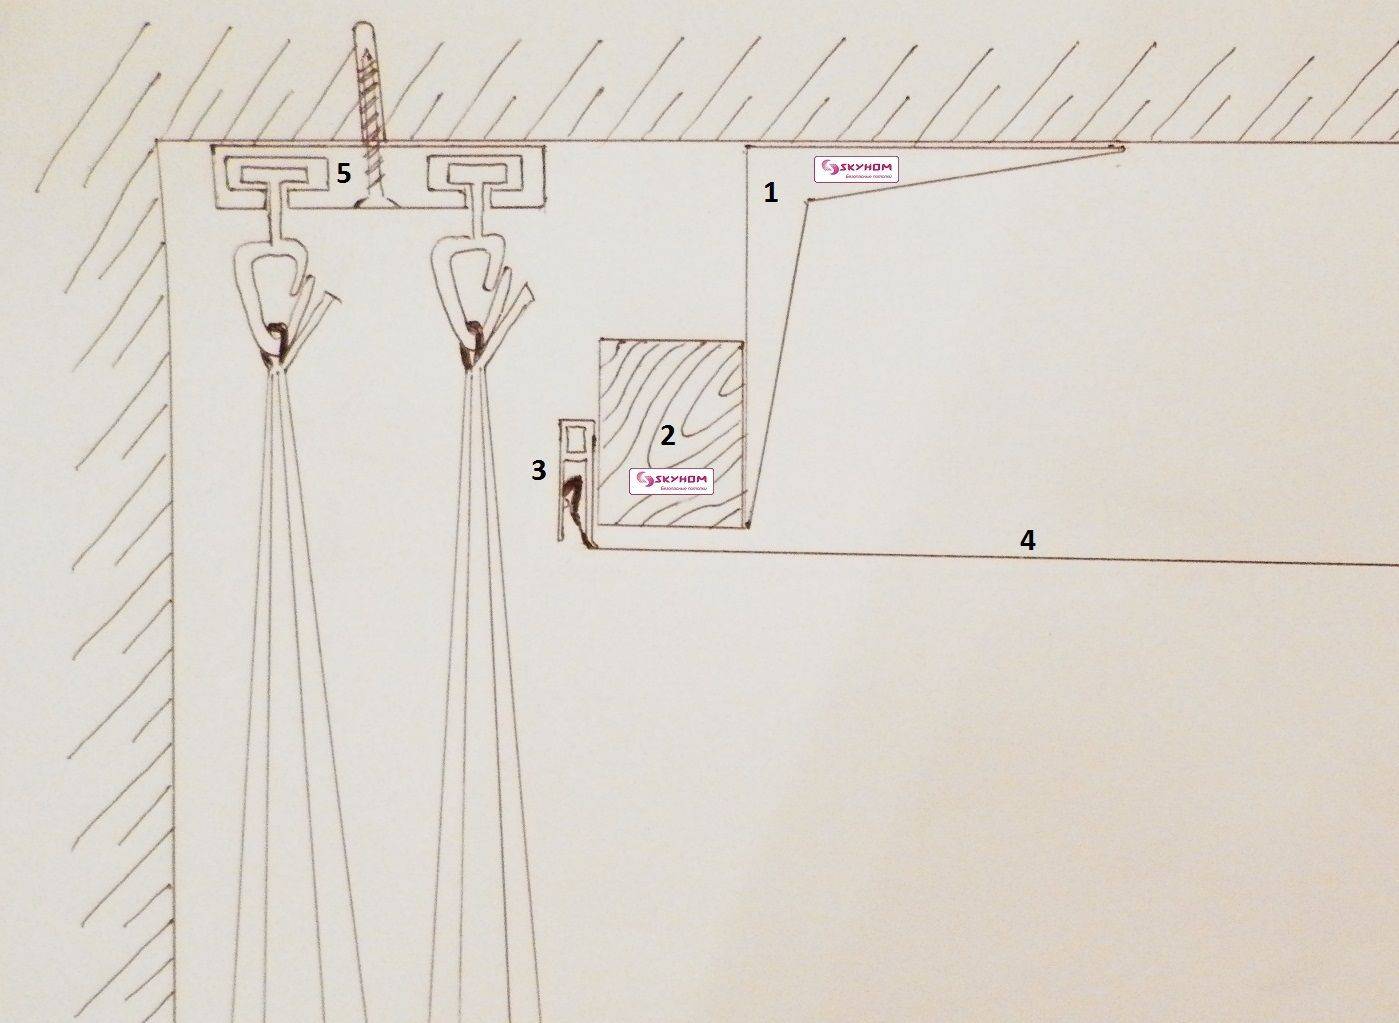 Скрытый карниз в натяжном потолке: его конструкция, потайное крепление, удобный монтаж и эксплуатация